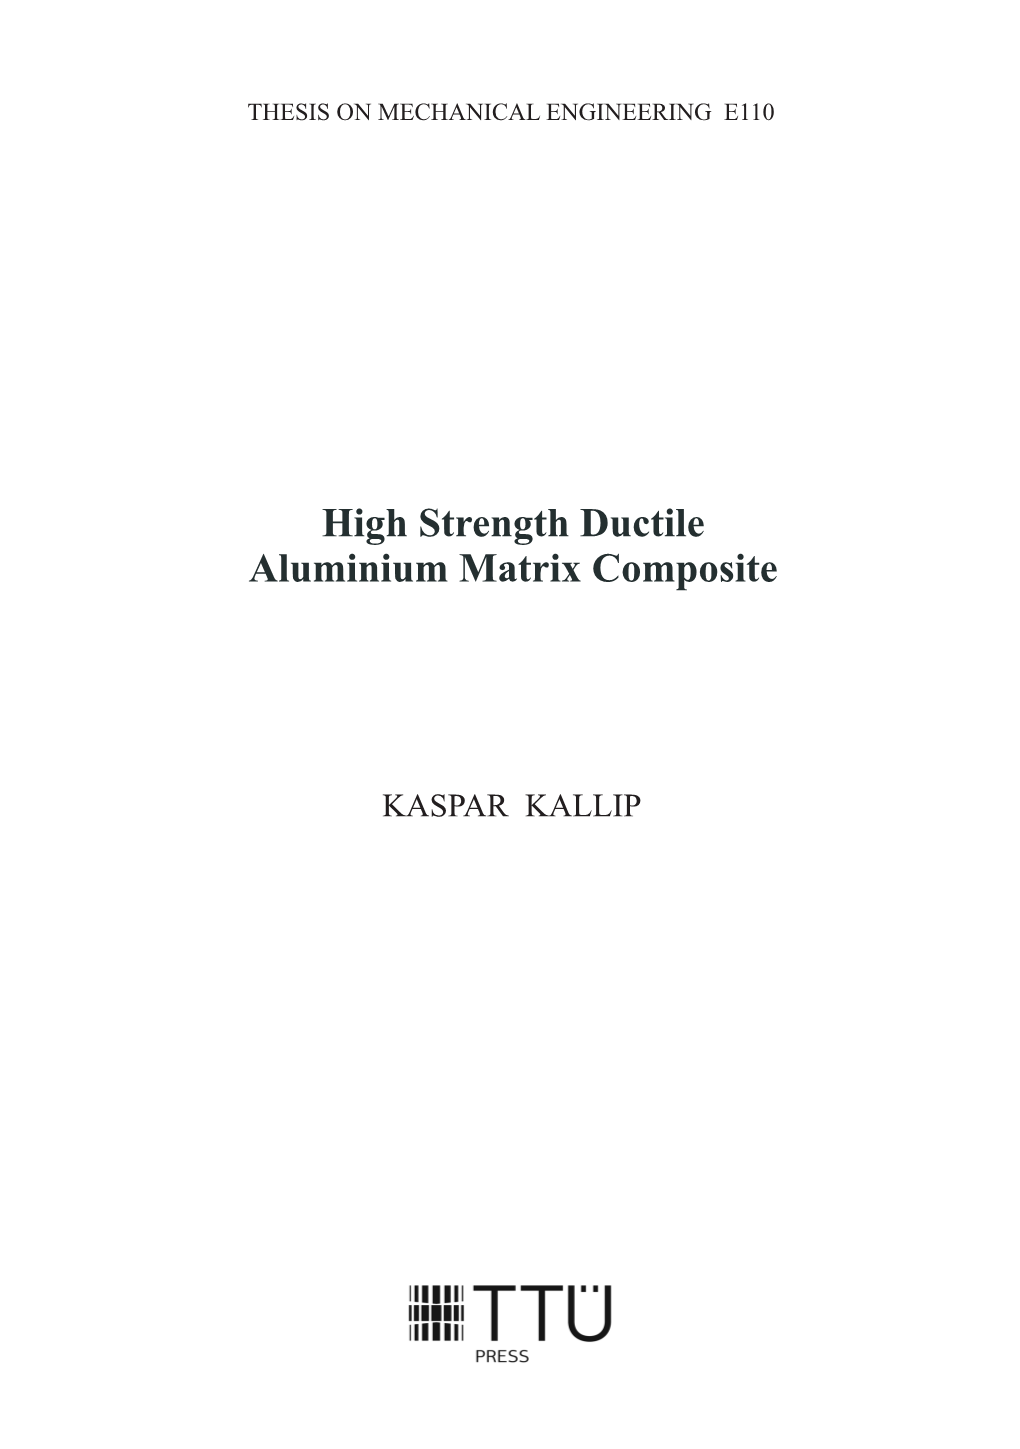 High Strength Ductile Aluminium Matrix Composite